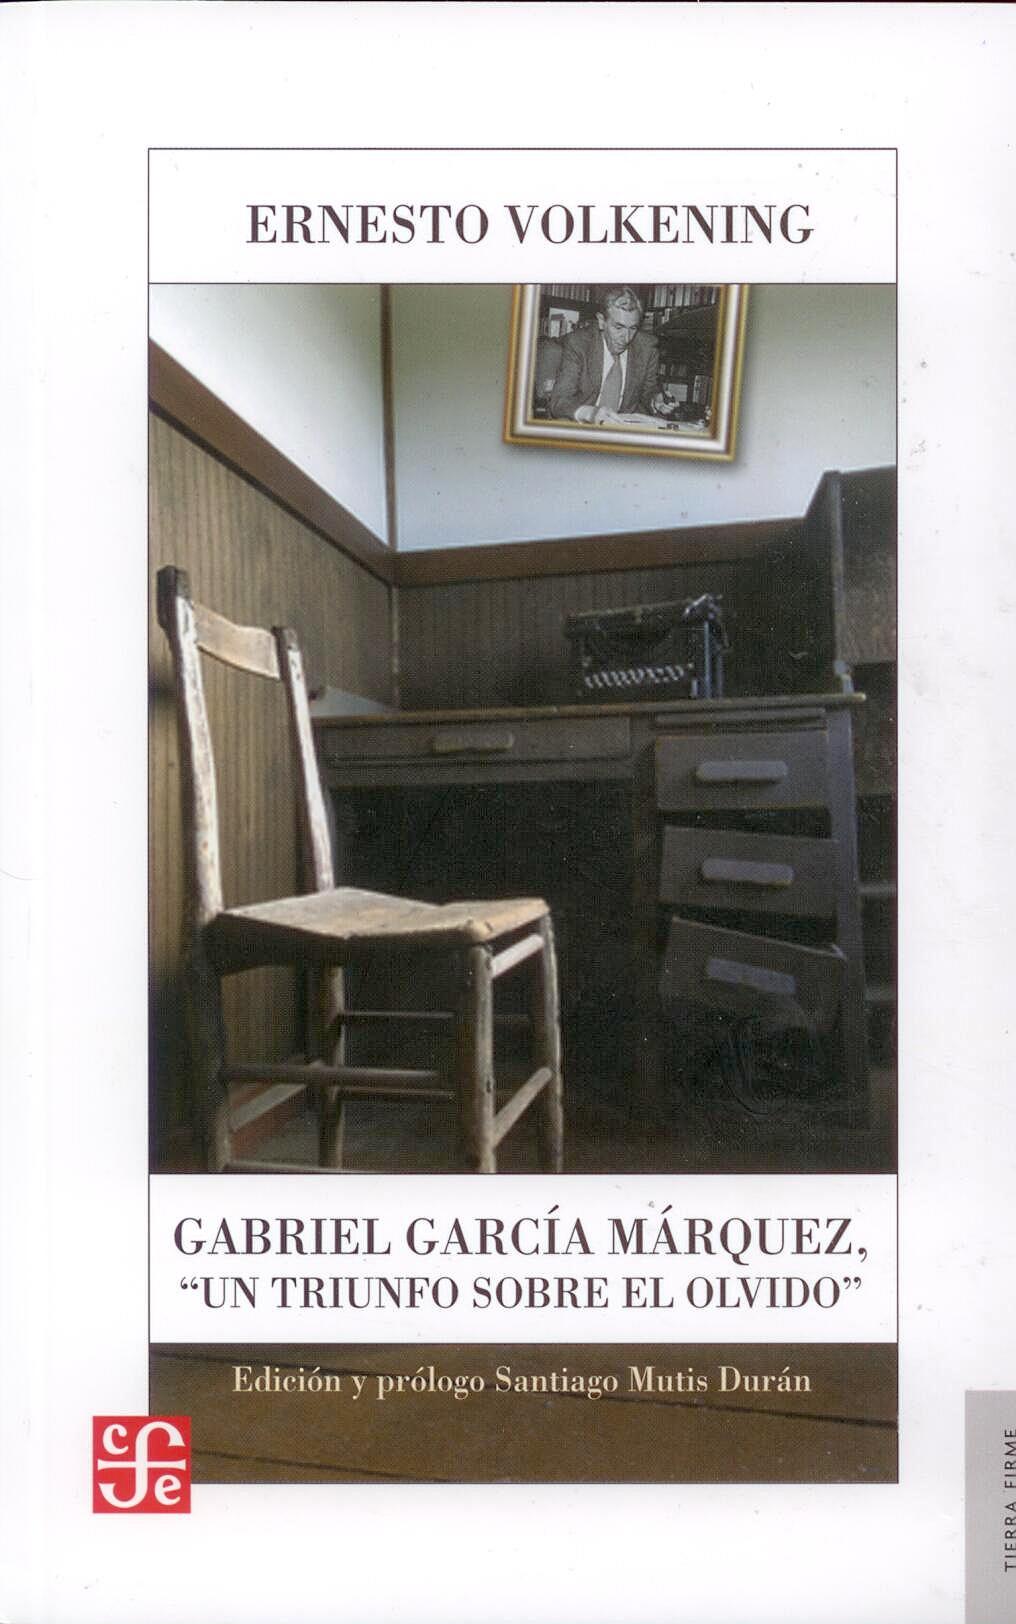 Gabriel Garcia Marquez "Un triunfo sobre el olvido". Un triunfo sobre el olvido